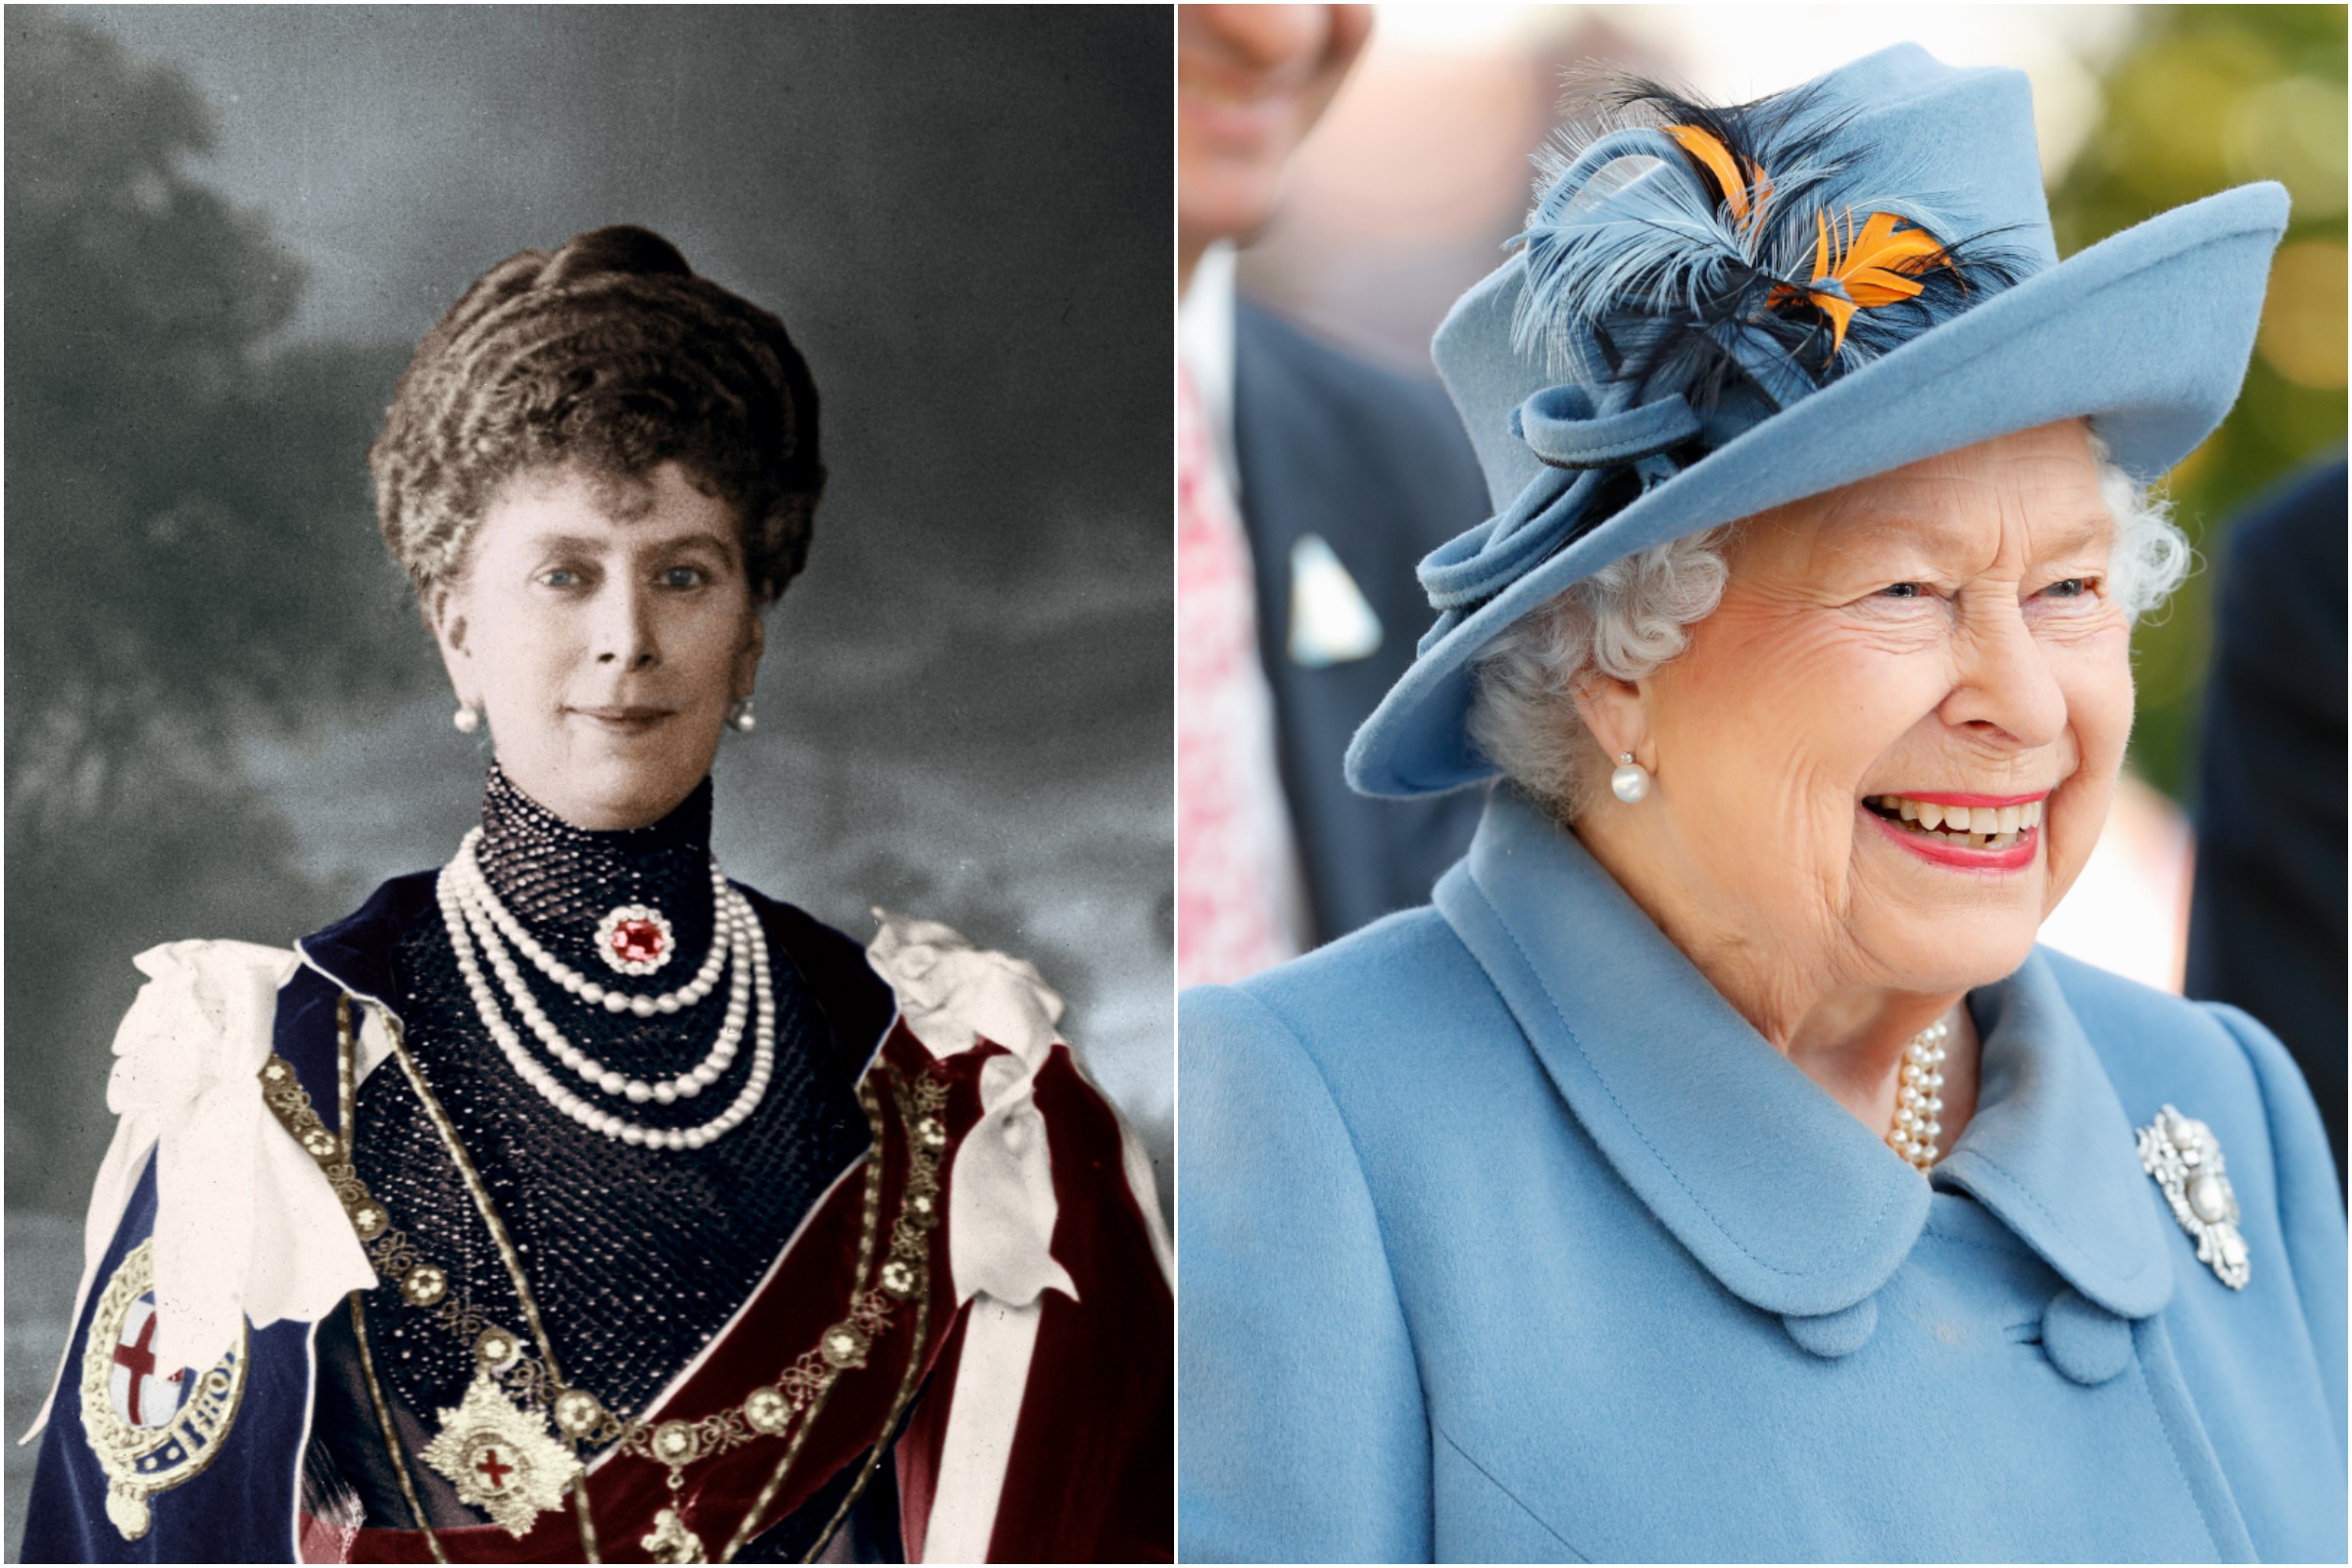 Queen Elizabeth Gifts Meghan Markle a Pair of Diamond Earrings